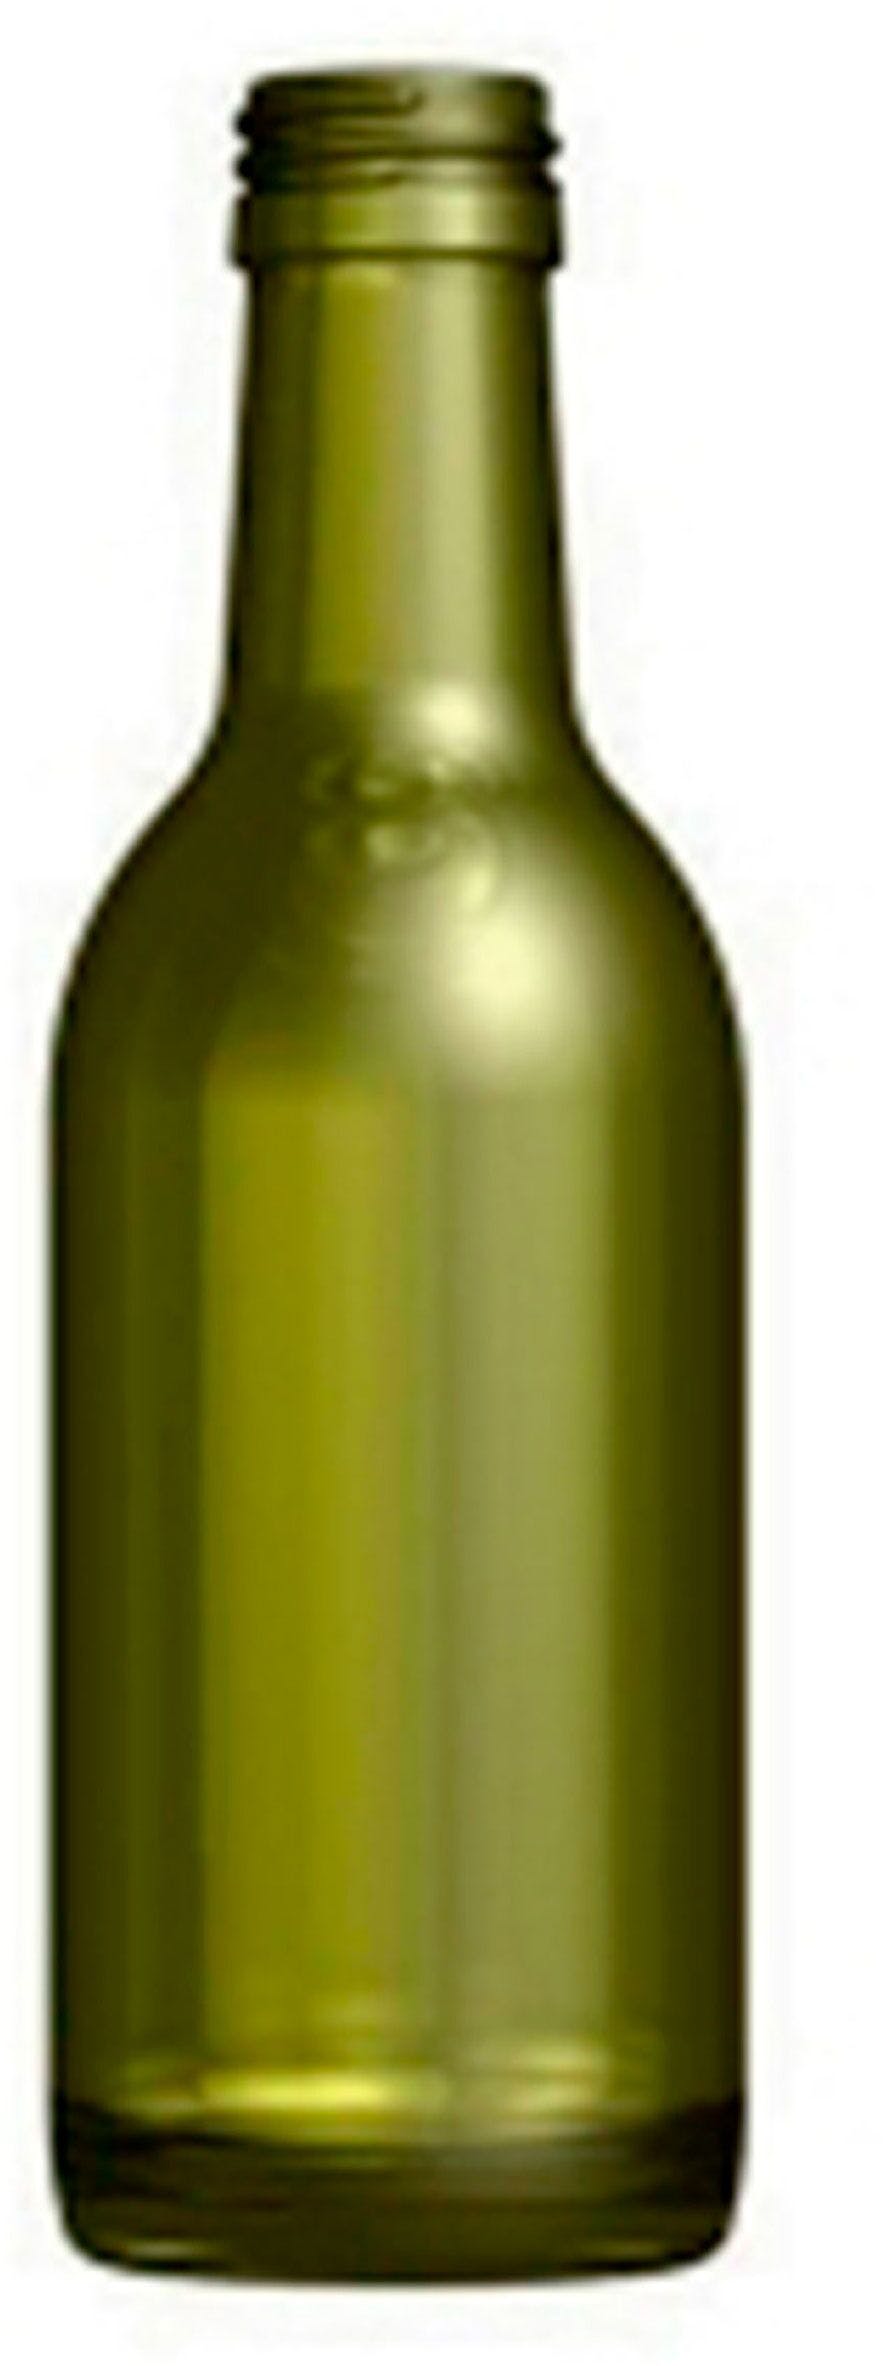 Bottle BORDELESA  STD 187 ml BG-Cork